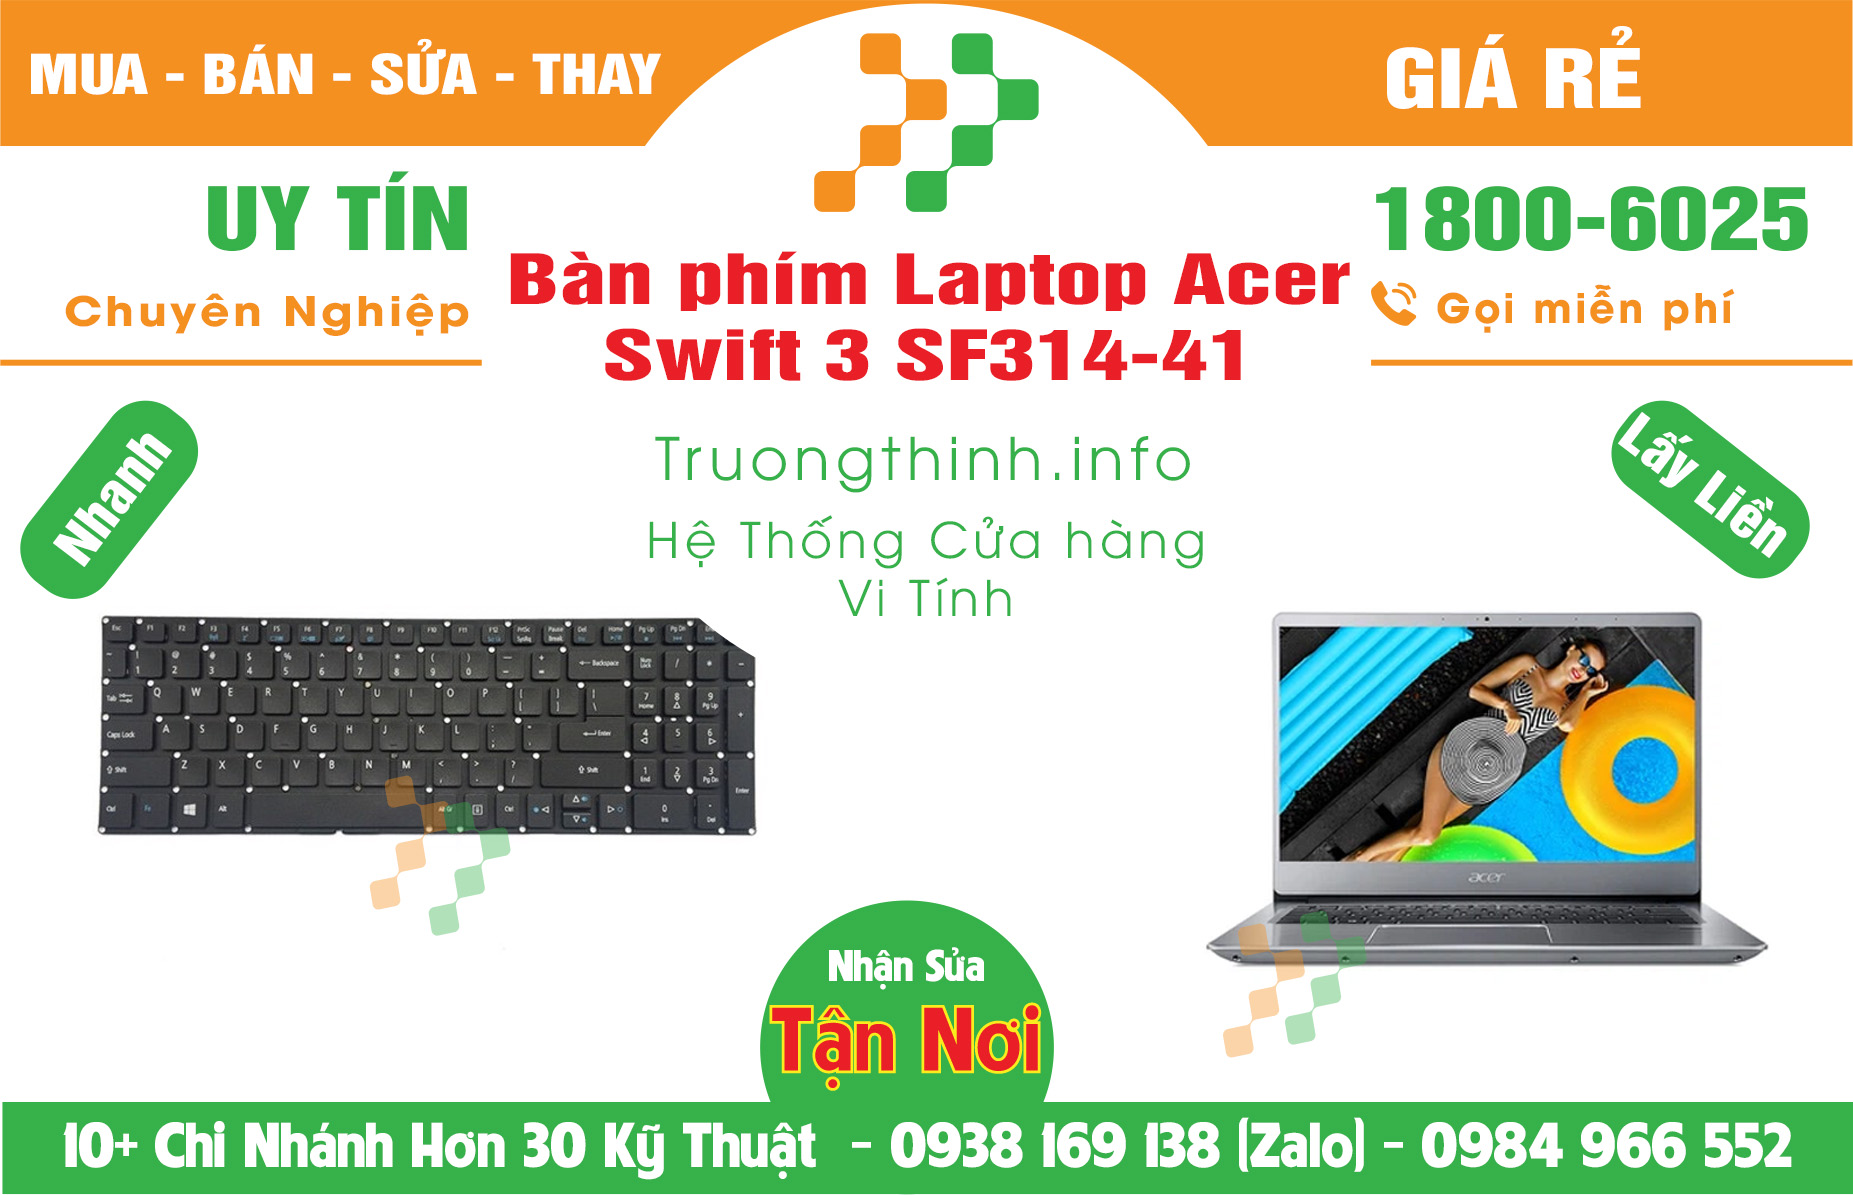 Mua bán Bàn Phím Laptop Acer Swift 3 SF314-41 Giá Rẻ | Vinh Tính Trường Thịnh Giá Rẻ